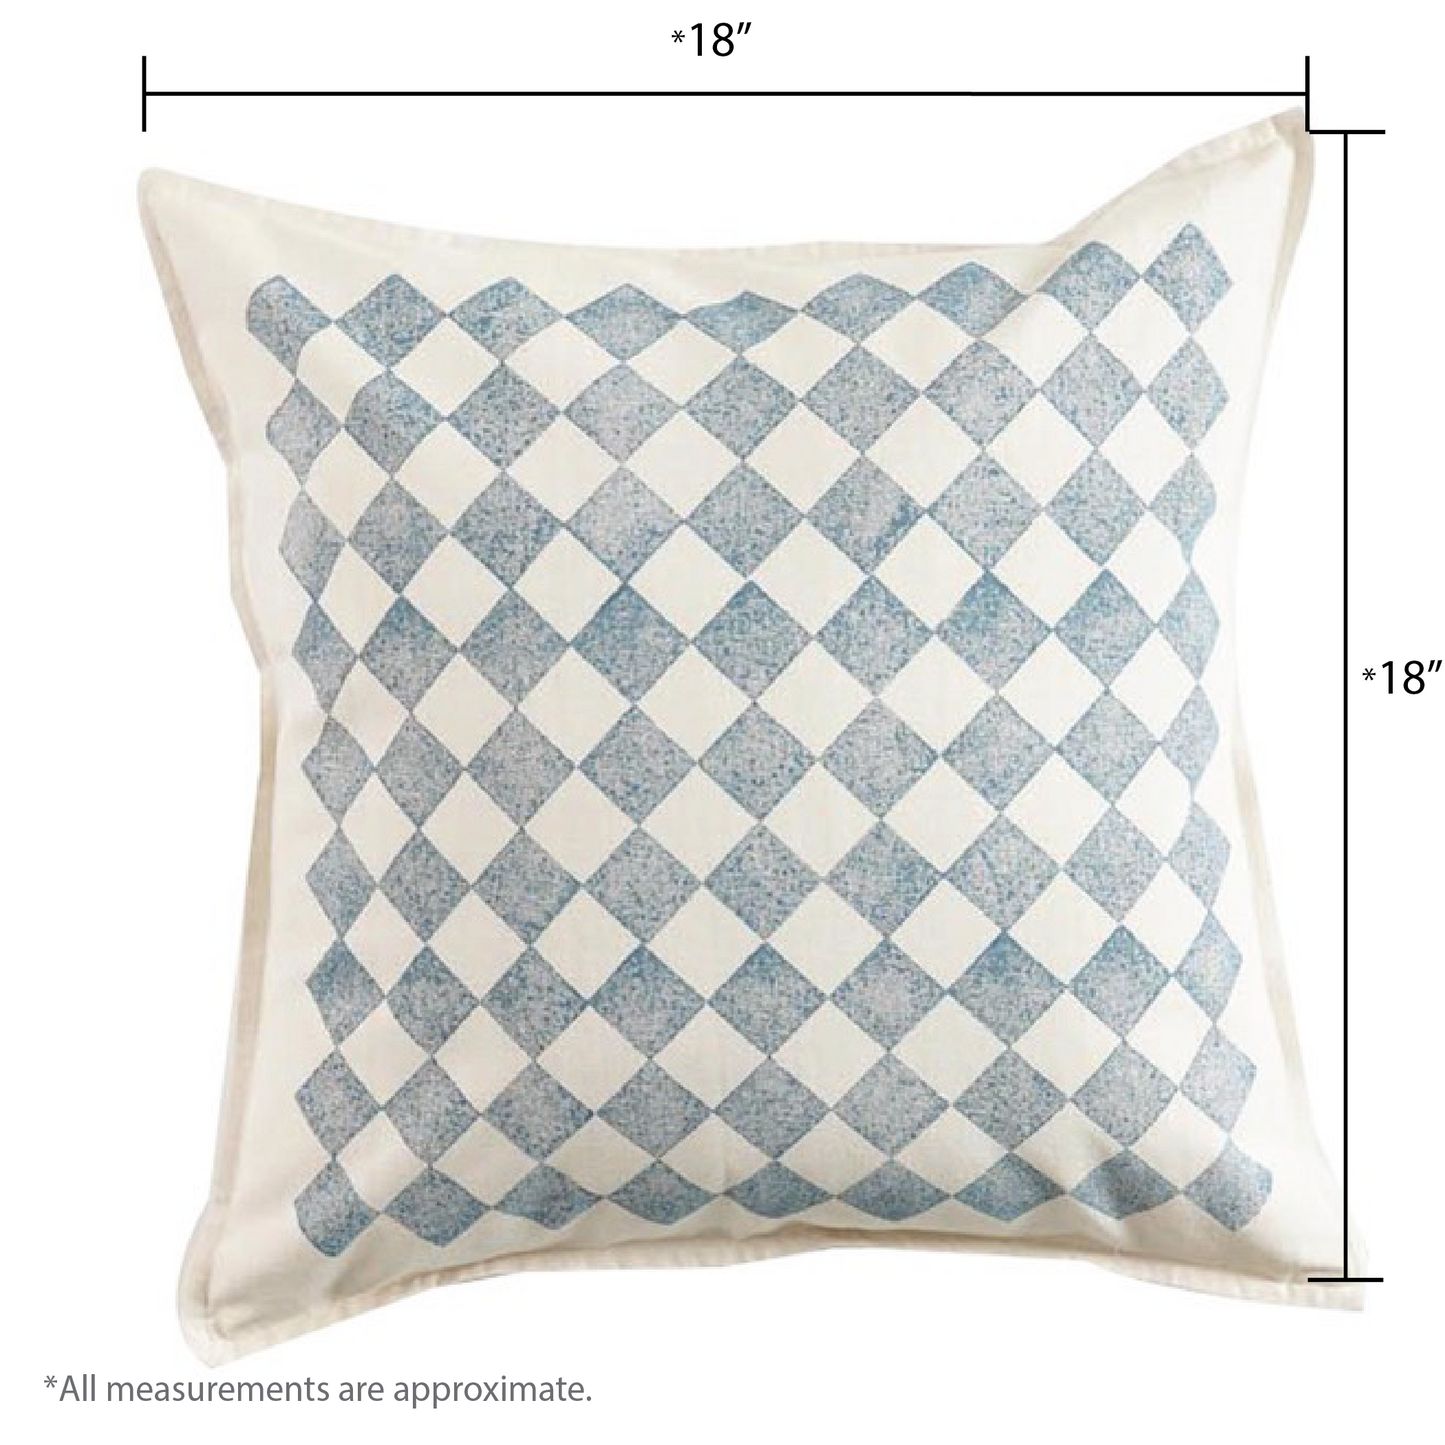 Chessboard Cushion Cover, Ocean Blue (18” X 18”)